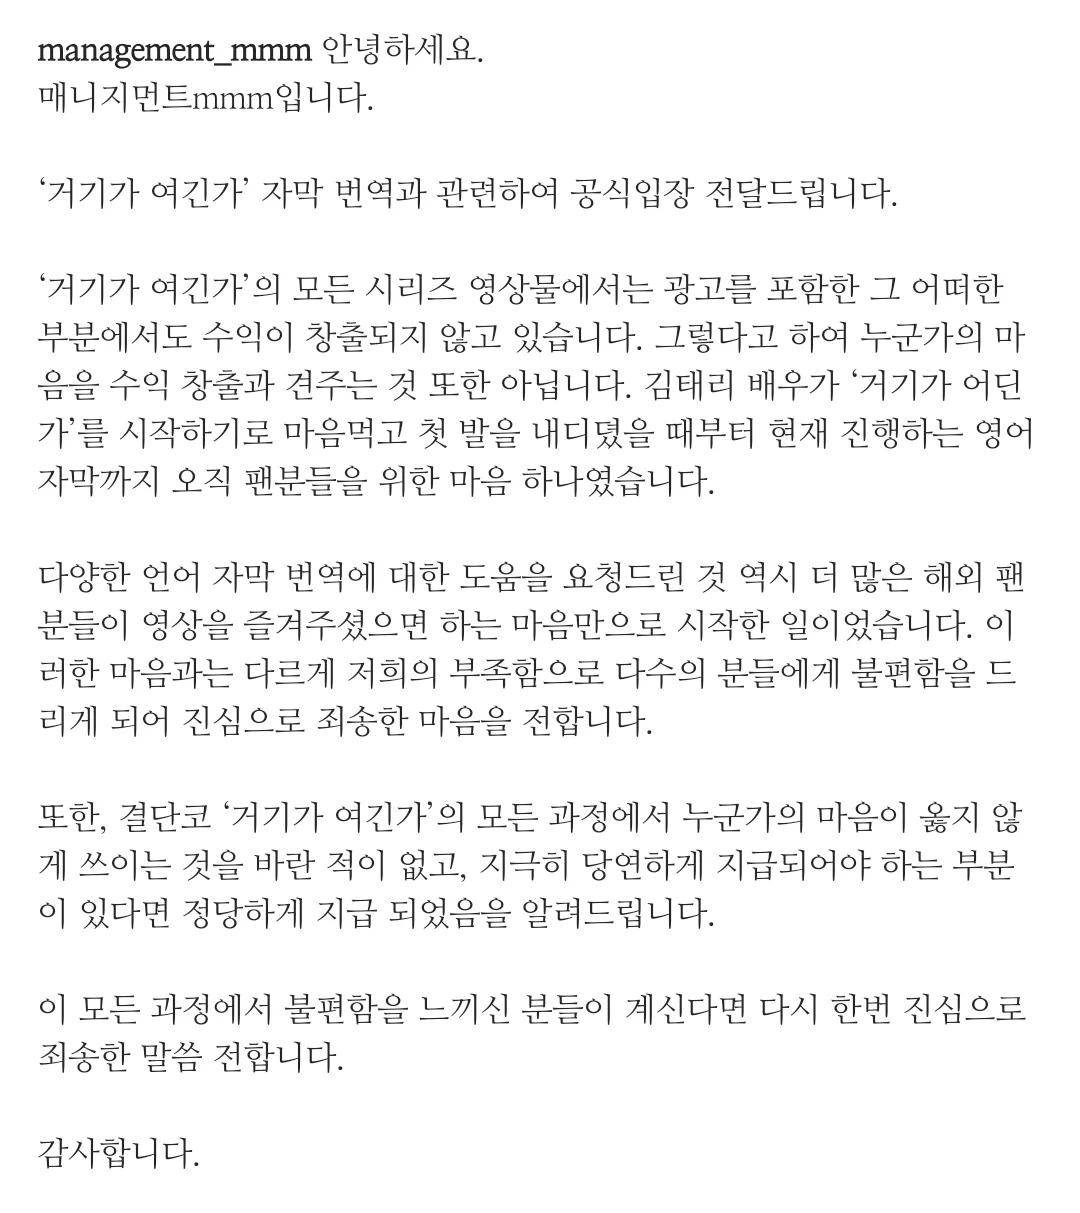 Eastsidestory - 김태리, 개인 유튜브 브이로그에 공짜로 번역 자막 달아 줄 사람 구인으로 논란